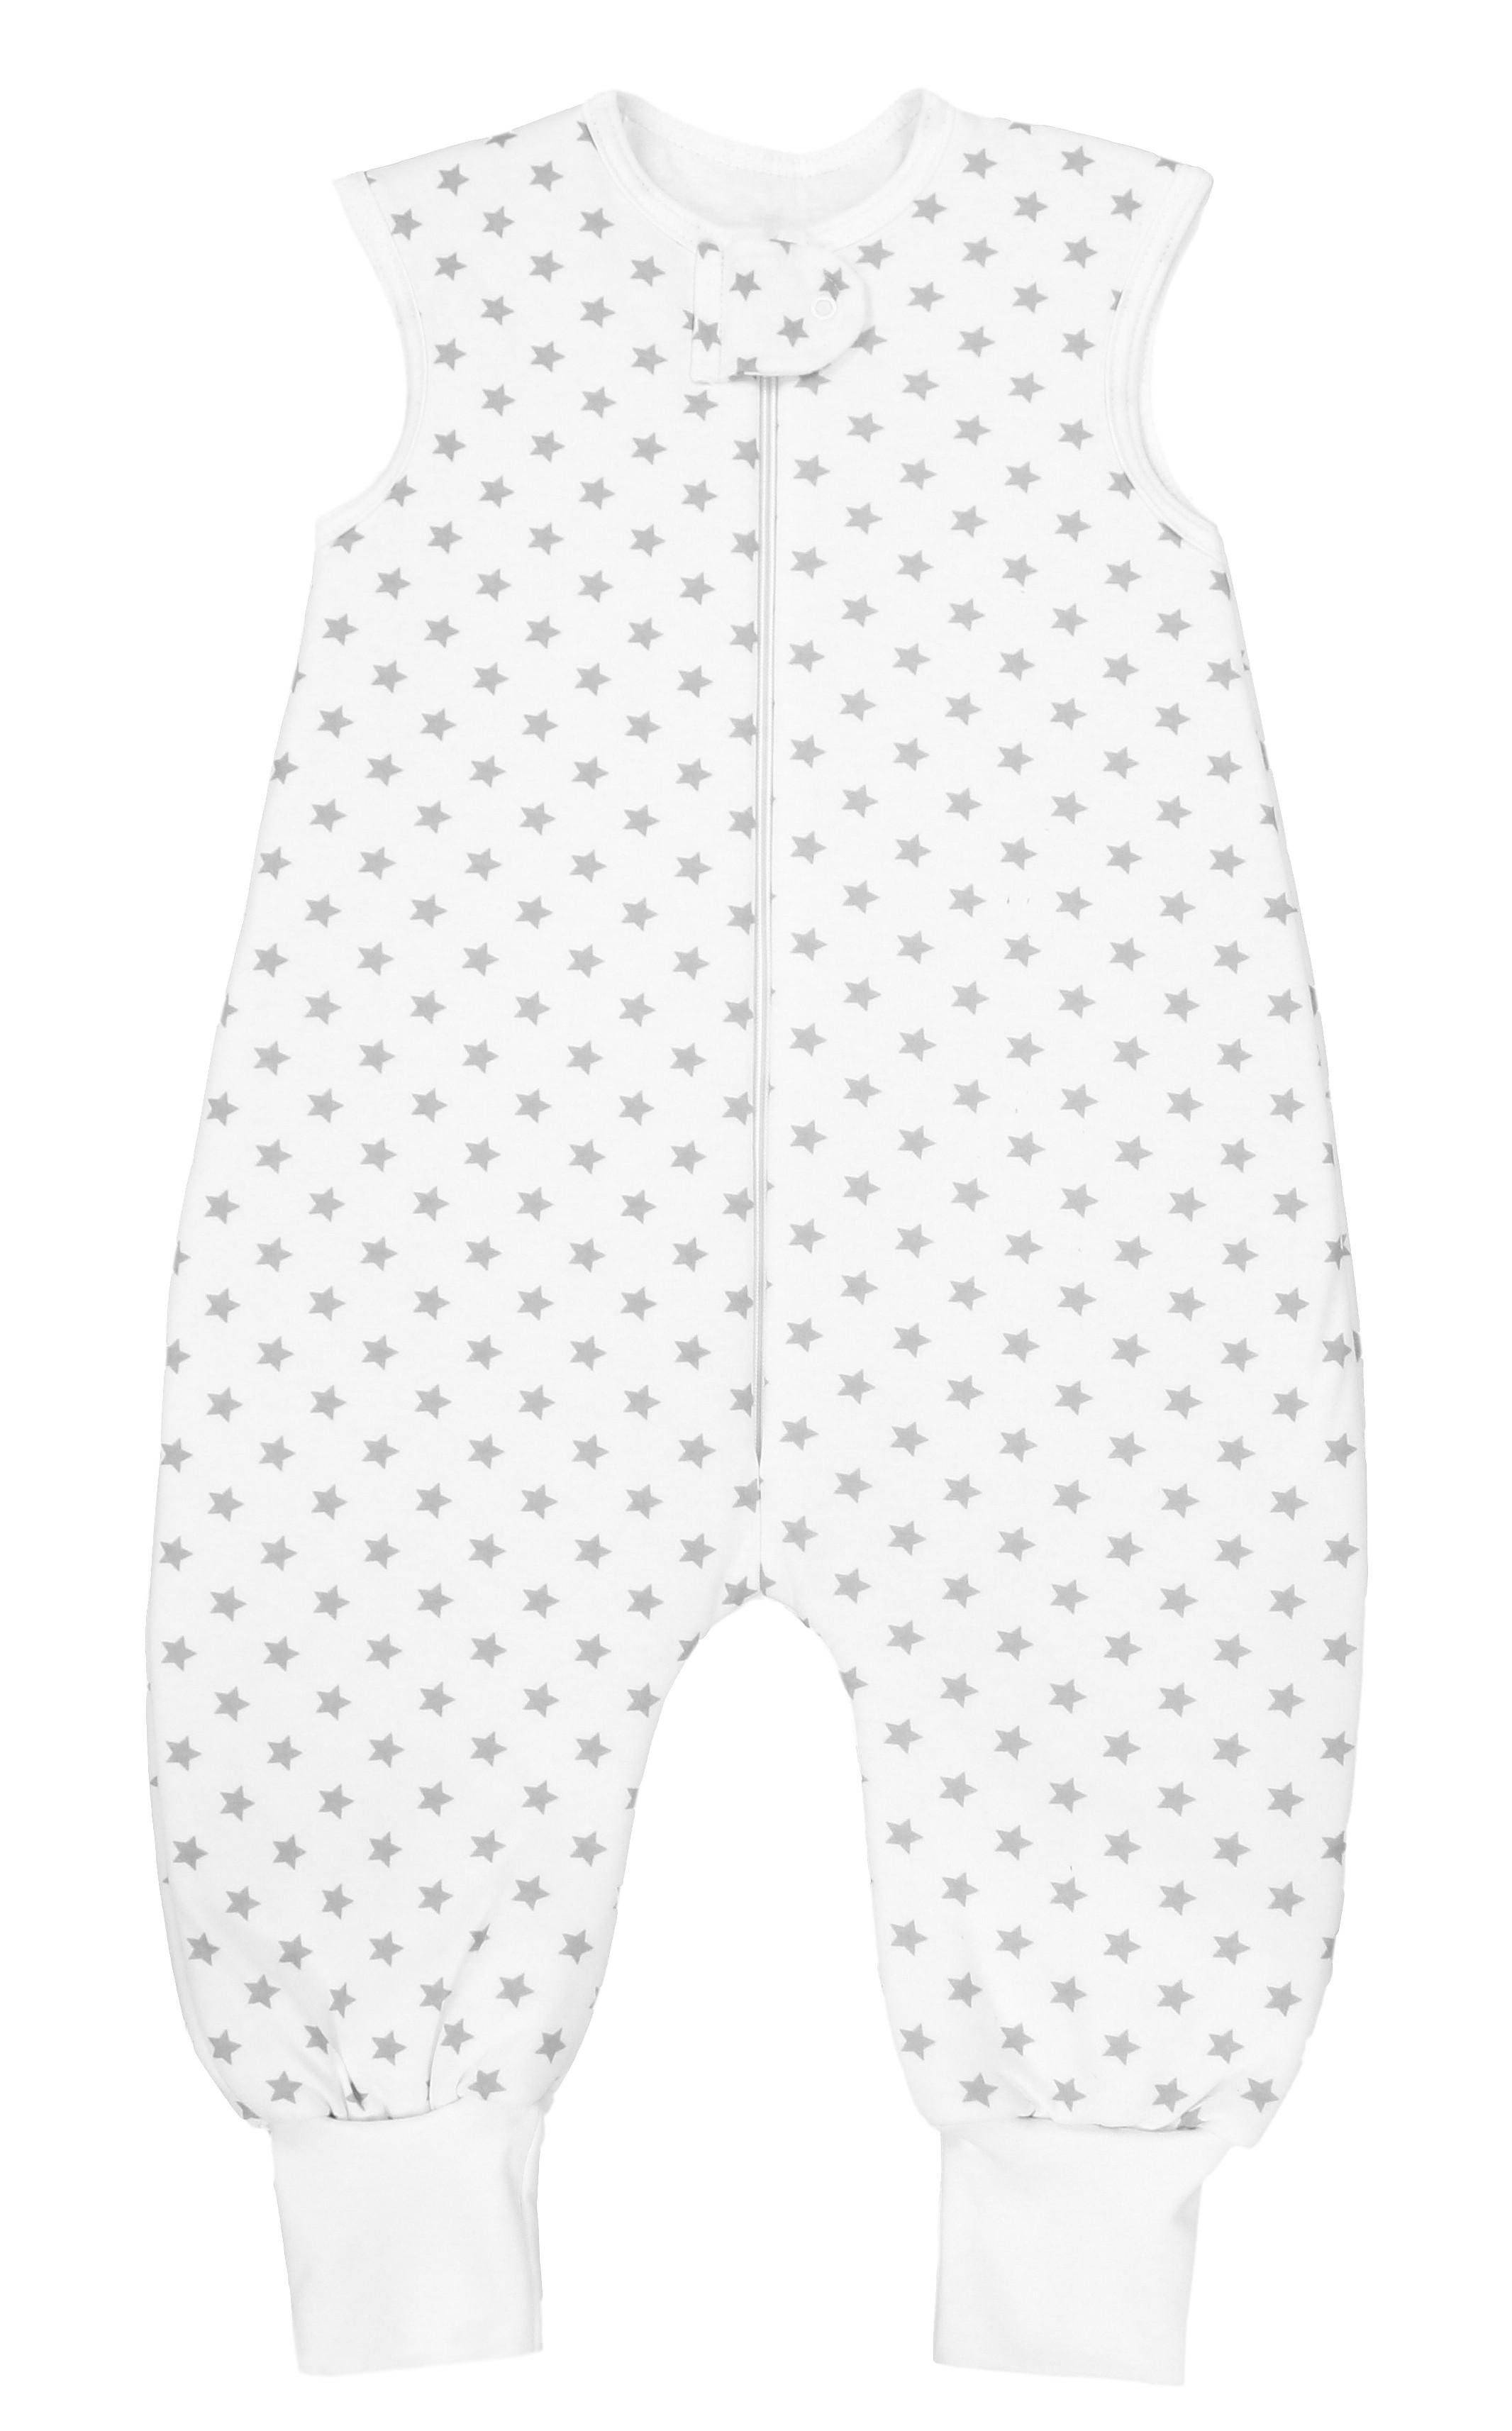 TupTam Babyschlafsack Winter Schlafsack mit Beinen OEKO-TEX zertifiziert 2,5 TOG Unisex Sternchen Weiß/Grau